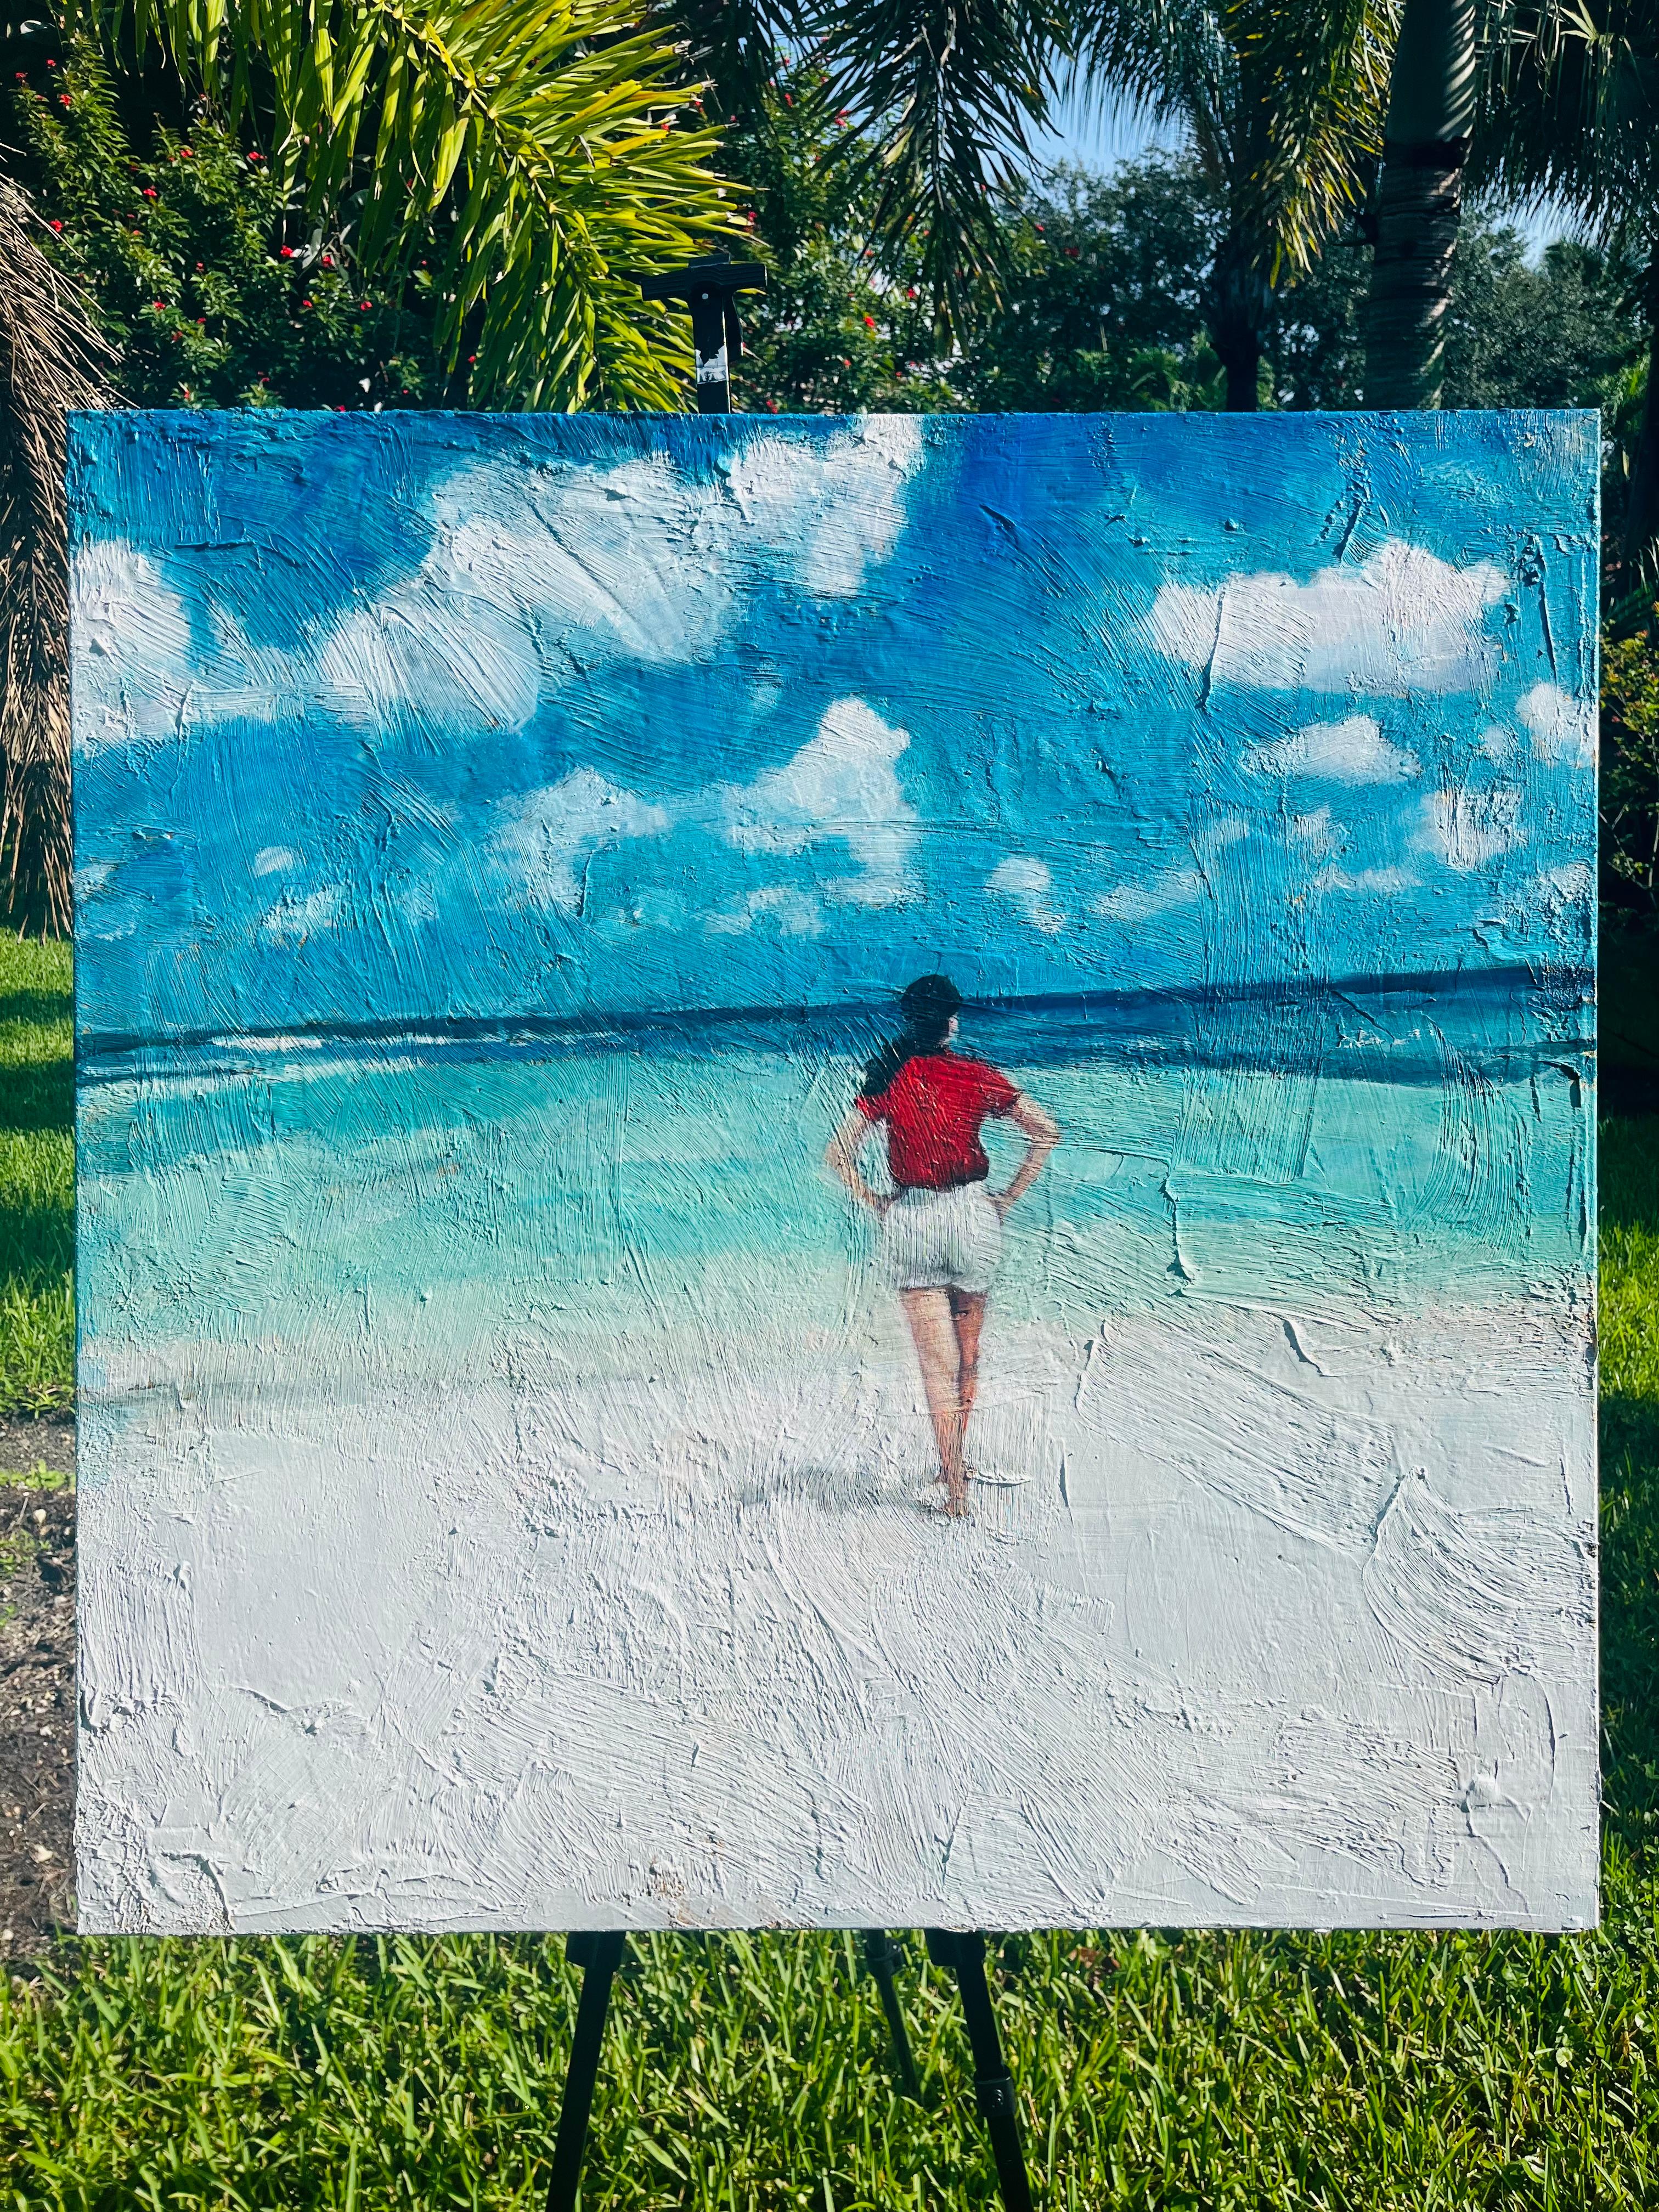 <p>Kommentare der Künstlerin<br>Die Künstlerin Nava Lundy malt eine junge Frau, die an einem unberührten Strand mit feinem weißen Sand spazieren geht, der zu einem kristallklaren türkisfarbenen Meer führt. Sie schaut in die Ferne, während flauschige